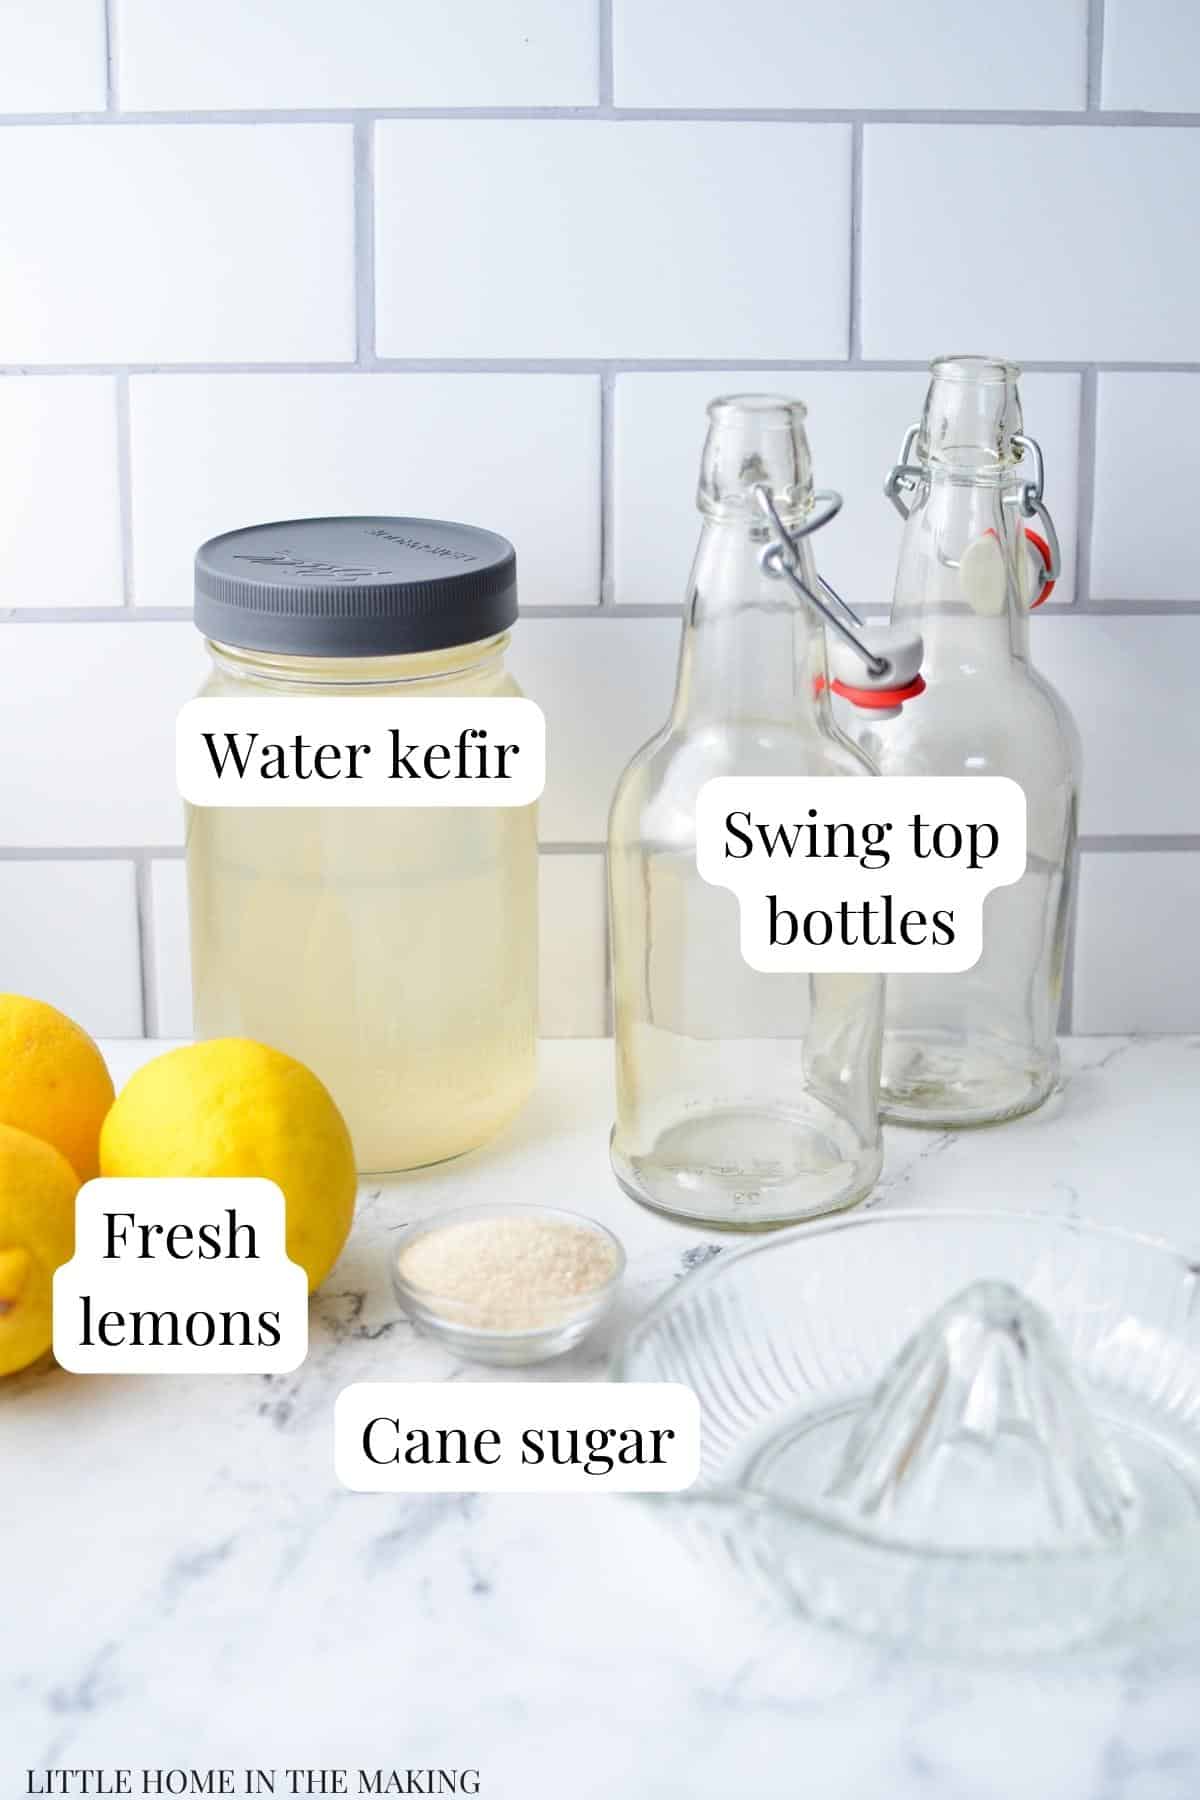 The ingredients needed to flavor water kefir with lemon: water kefir, lemons, and cane sugar.